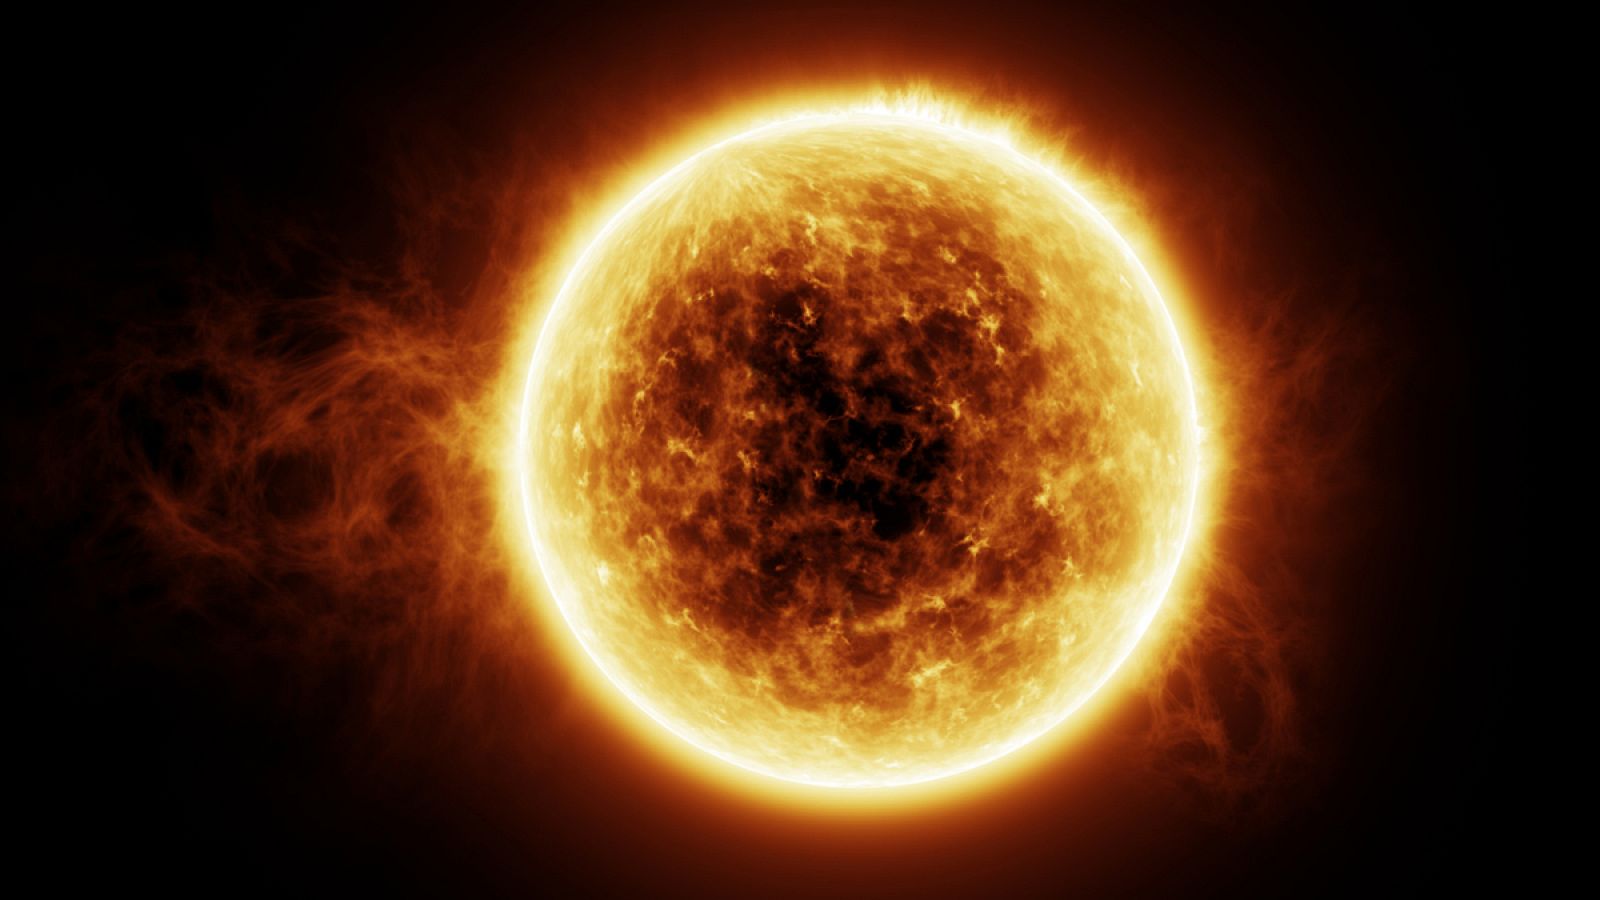 El observatorio húngaro de Tihany detectó en 2003 una tormenta solar similar a la mayor conocida